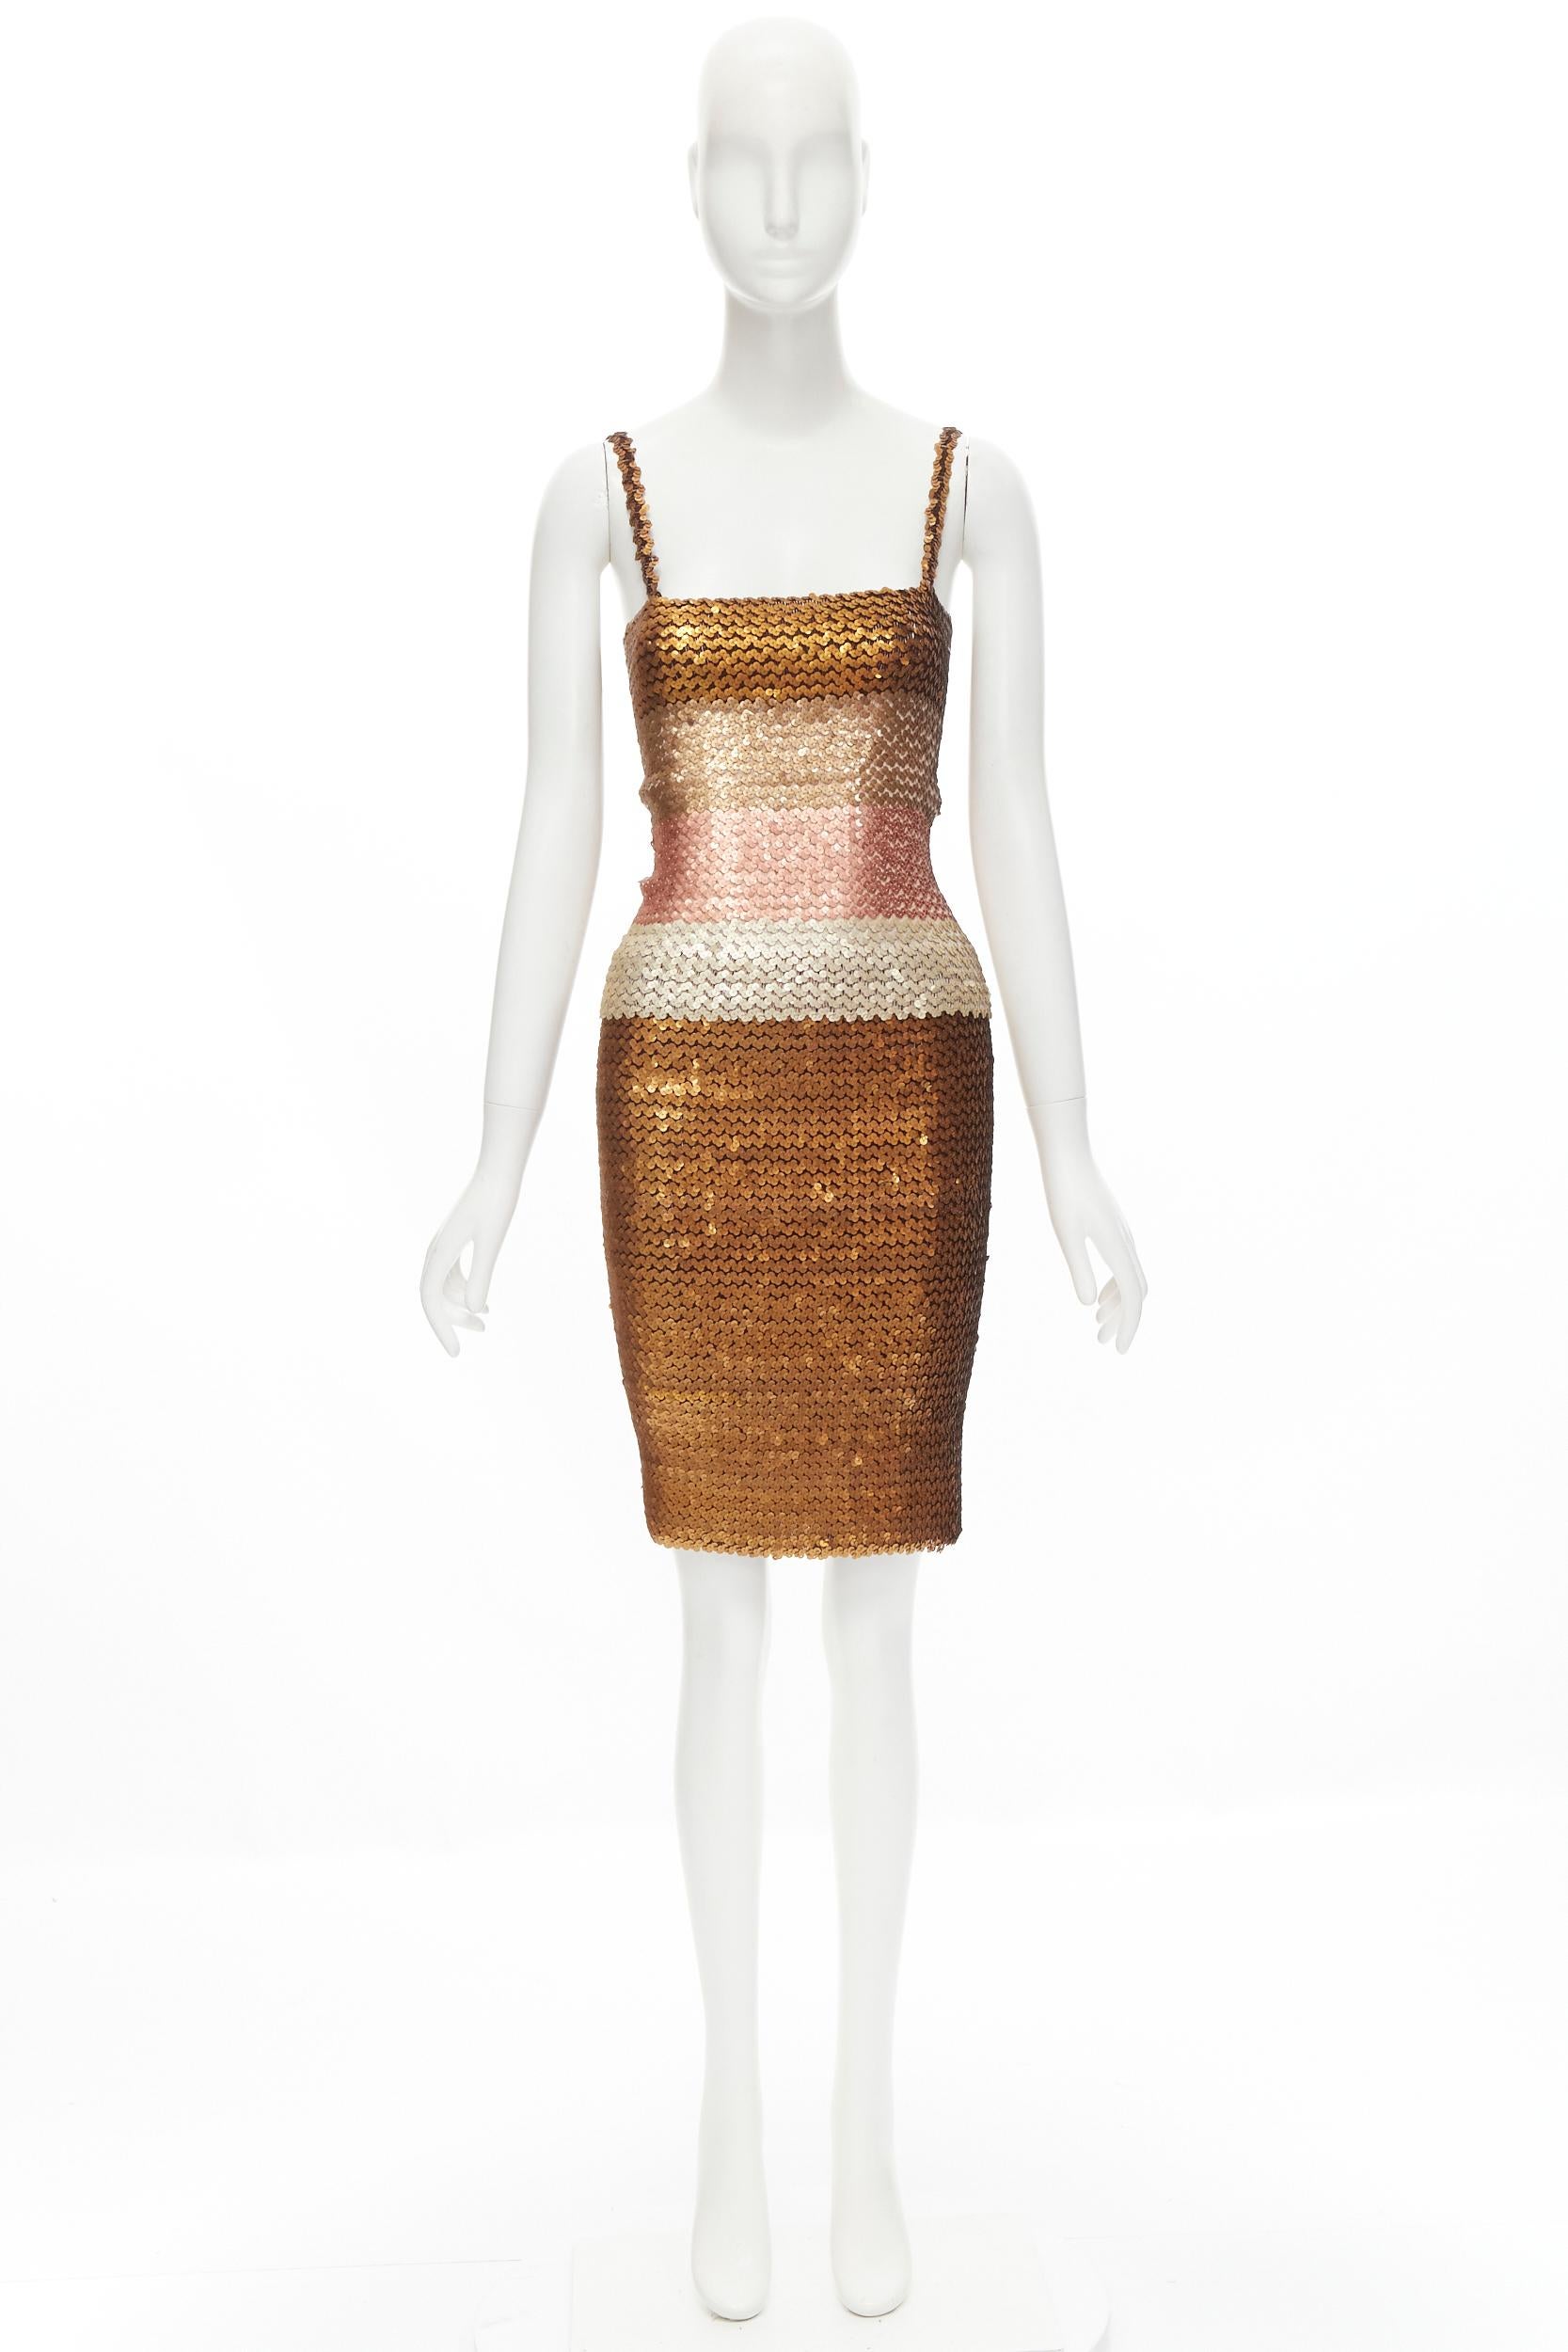 RITMO DI PERLA Vintage ombre gold sequins cami top pencil skirt dress IT44 M 1